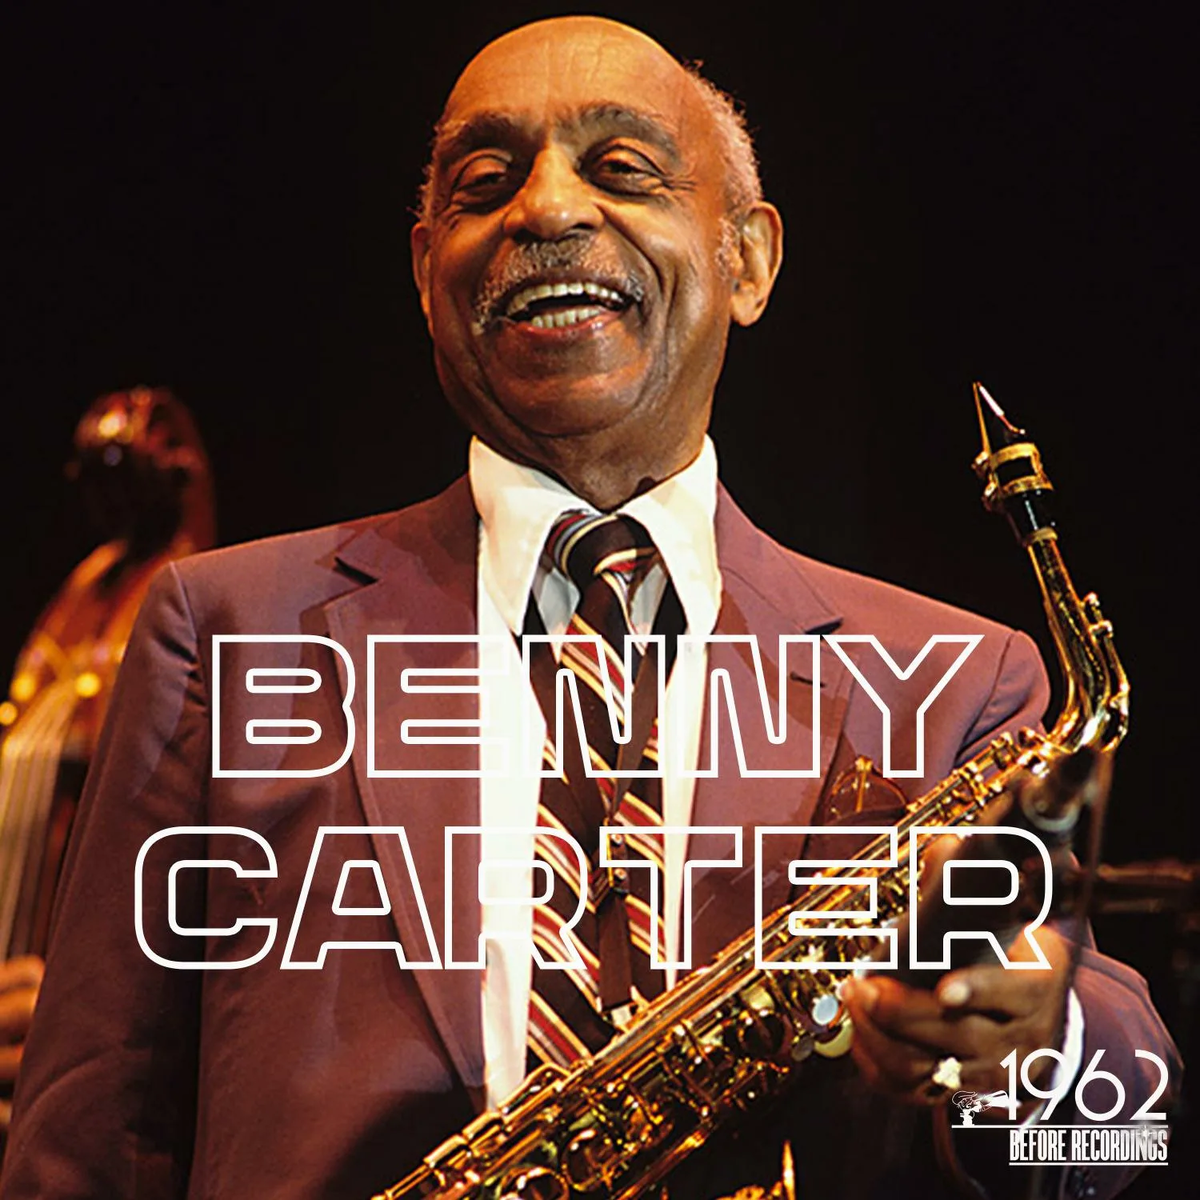 Сегодня, 8 августа, мы отмечаем 115-летие со дня рождения старейшины джазового мира - саксофониста, трубача, композитора и бэндлидер Бенни Картера (Benny Carter), отличившегося невероятным творческим